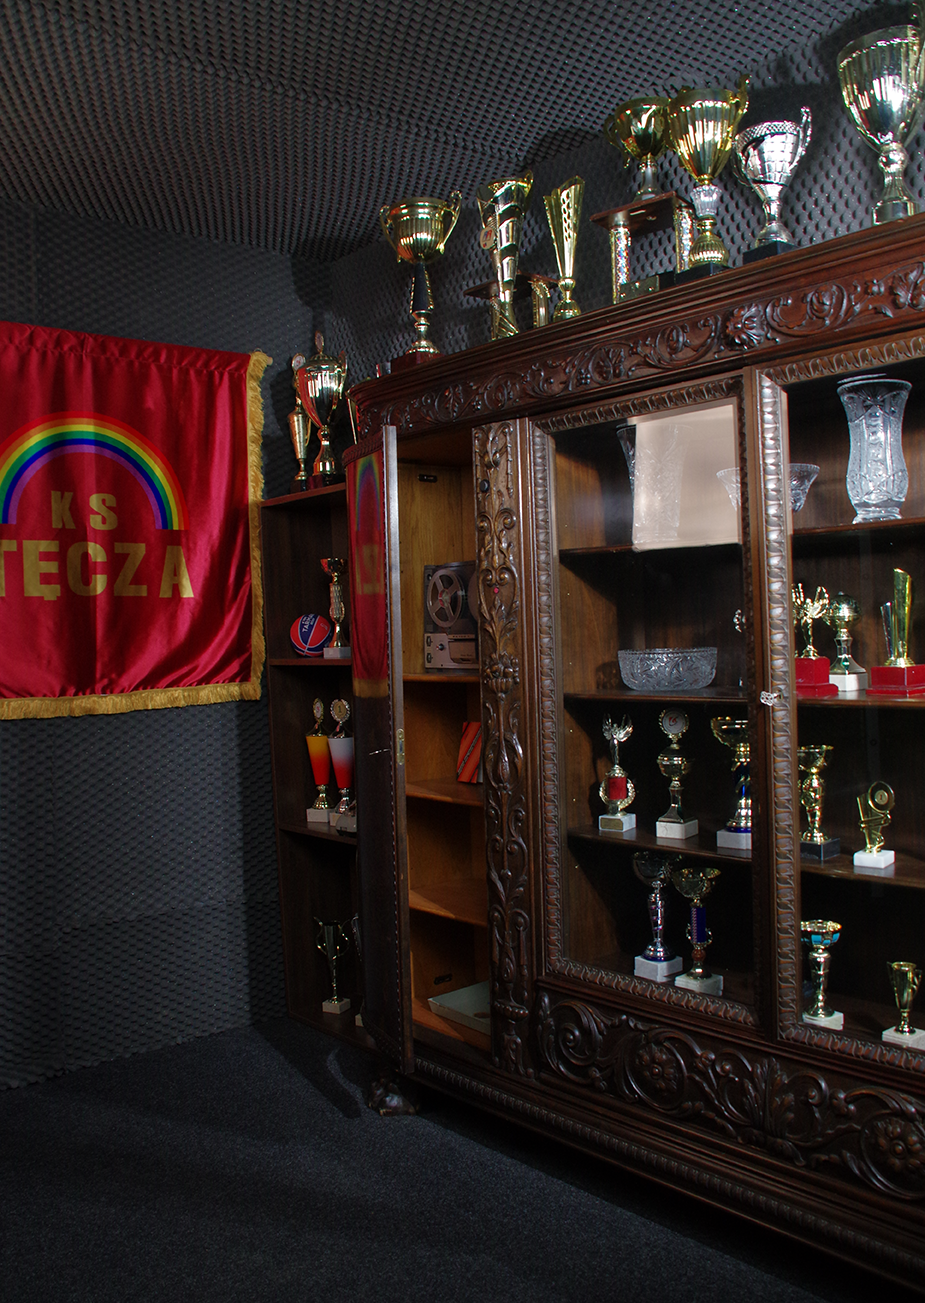 W odtworzonym gabinecie Prezesa Klubu Sportowego Tęcza urządziliśmy studio nagrań!